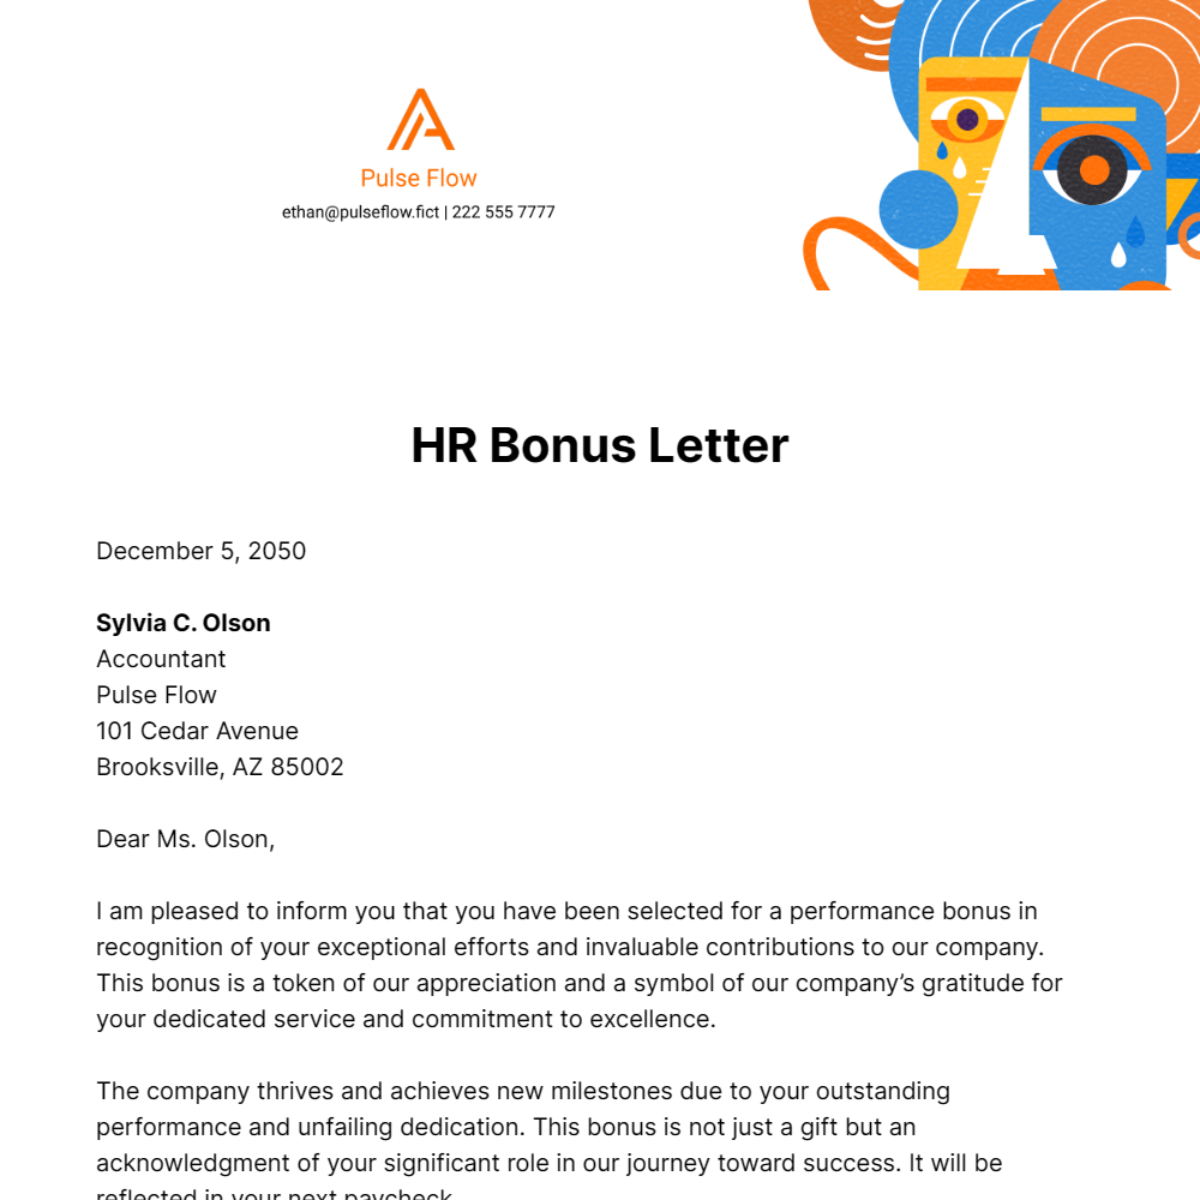 HR Bonus Letter Template